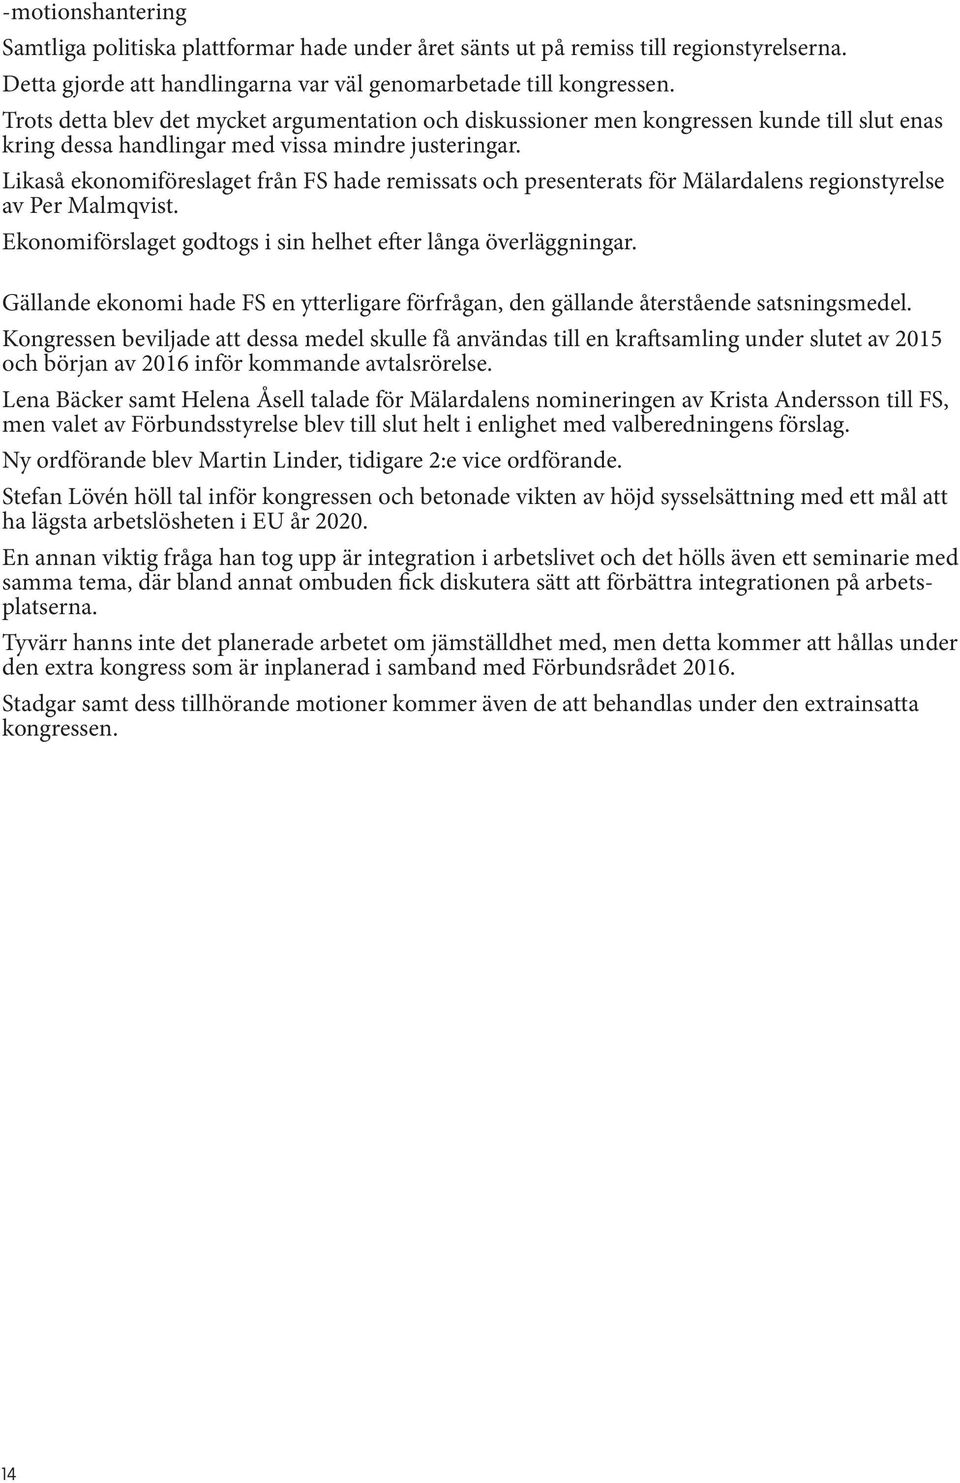 Likaså ekonomiföreslaget från FS hade remissats och presenterats för Mälardalens regionstyrelse av Per Malmqvist. Ekonomiförslaget godtogs i sin helhet efter långa överläggningar.